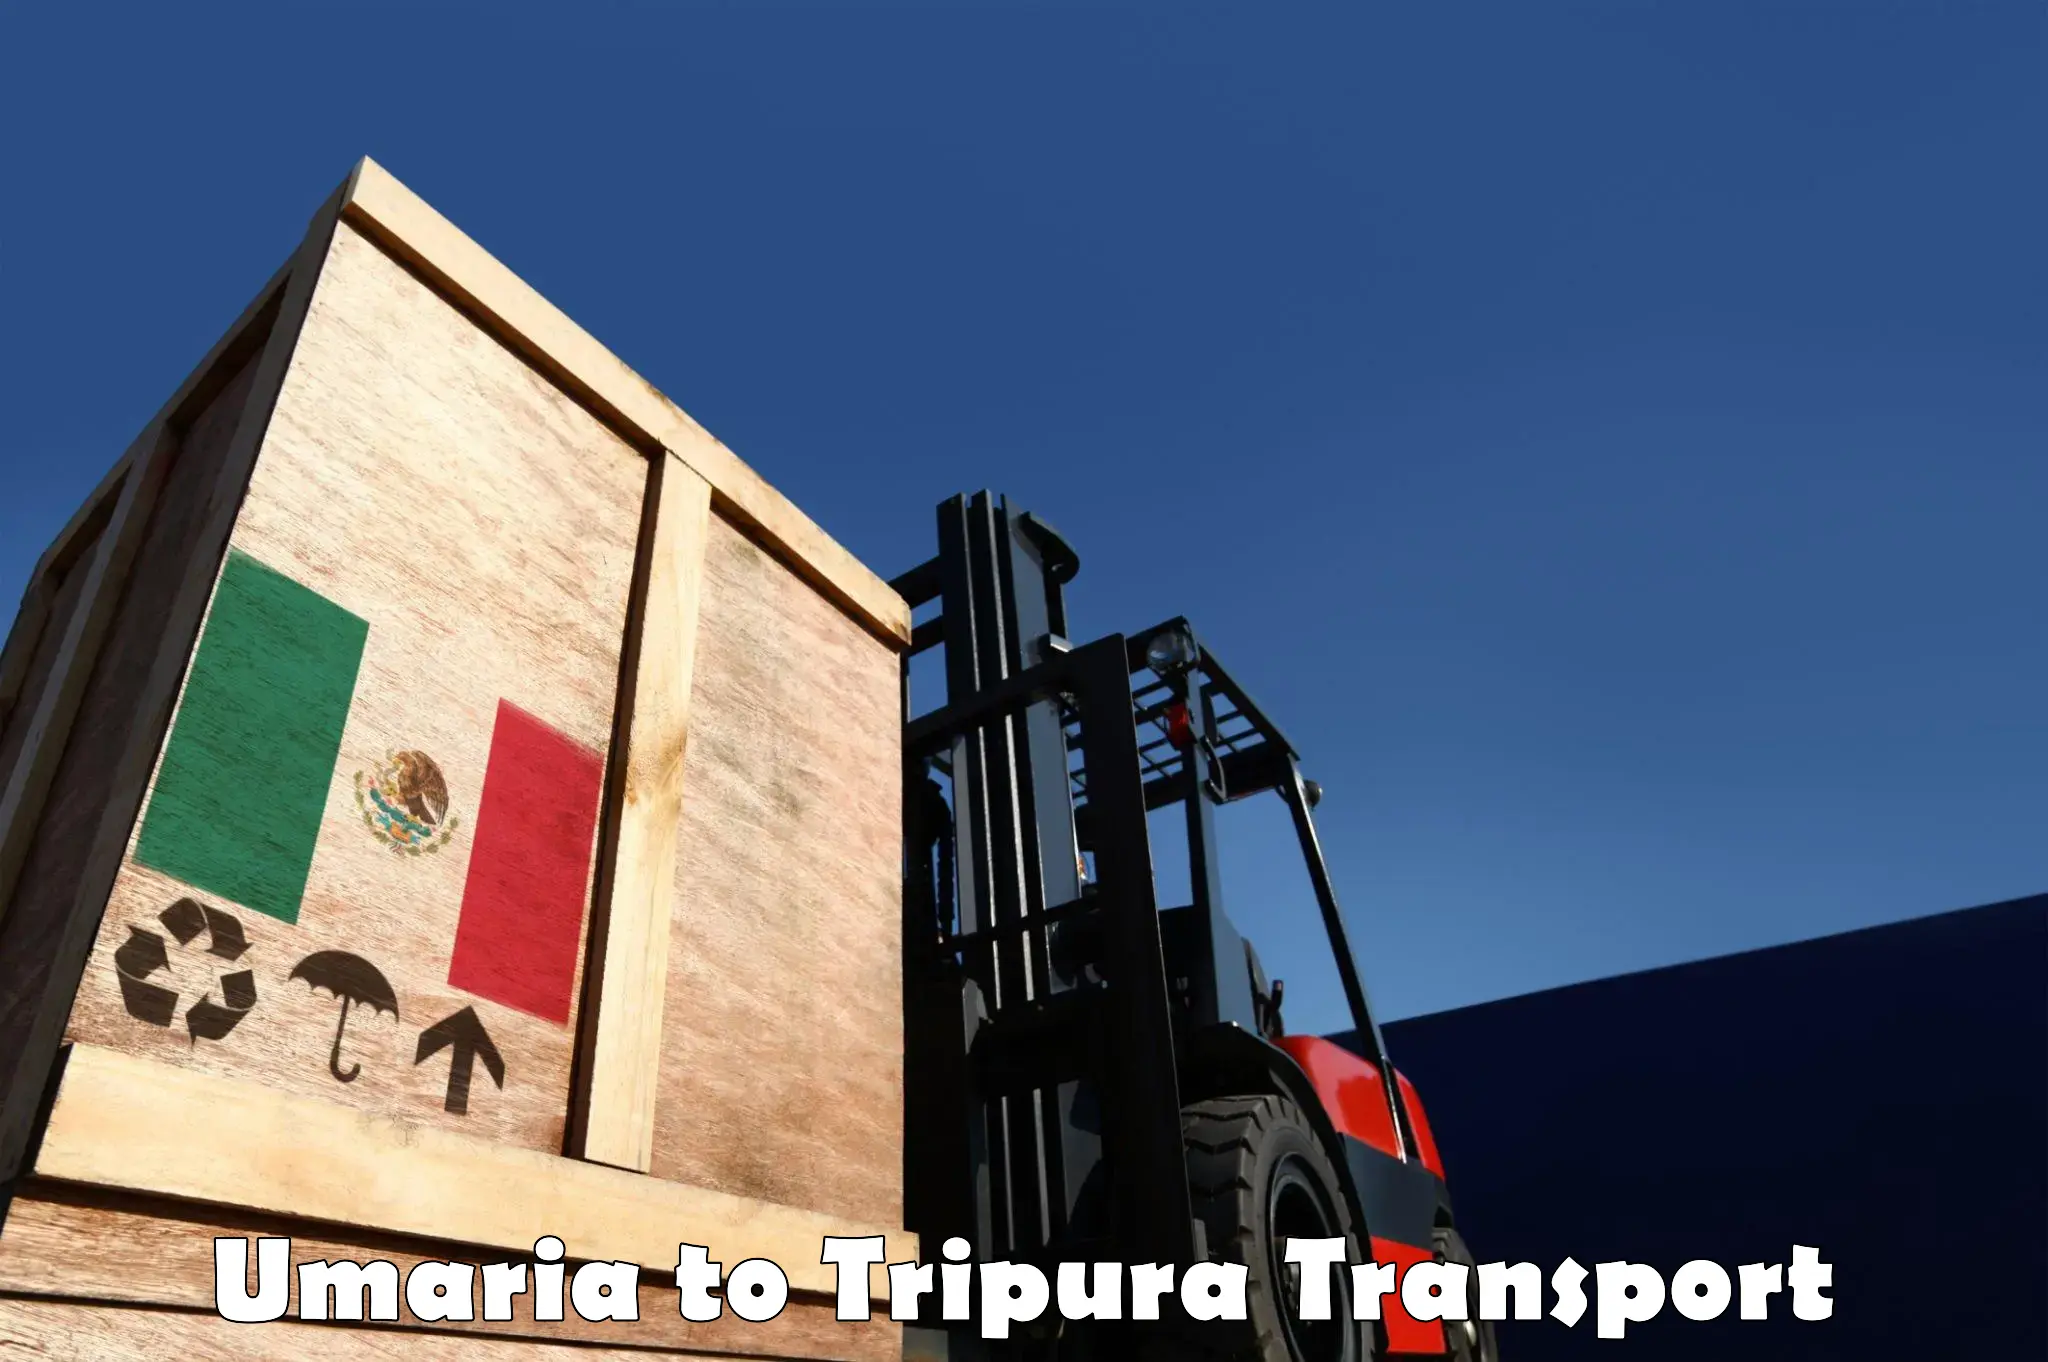 Daily transport service Umaria to Udaipur Tripura